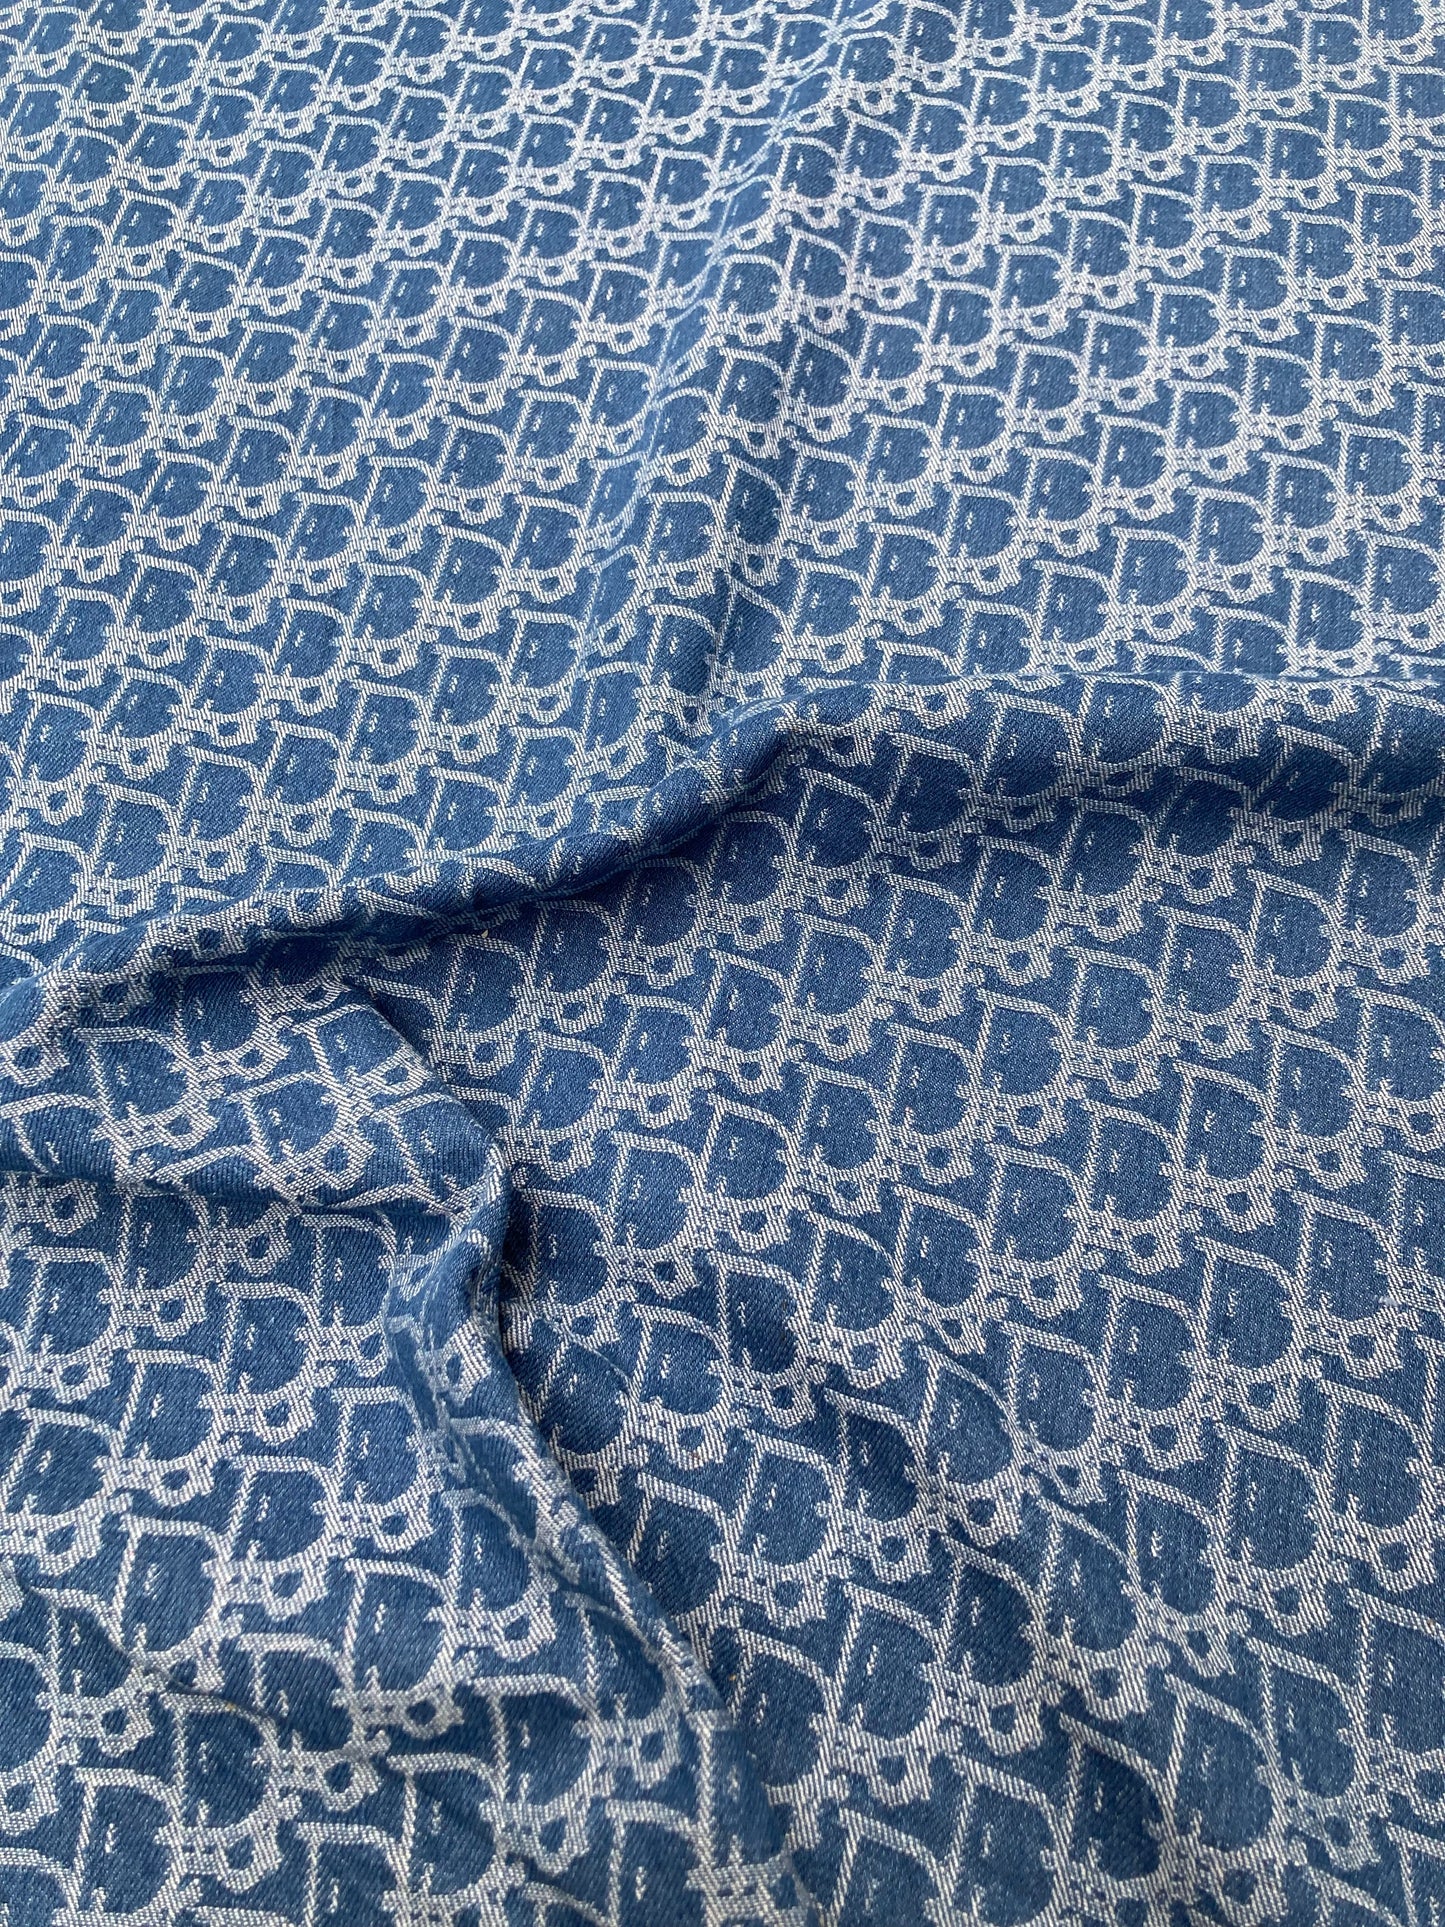 Handmade Denim Dior Fabric for Custom DIY Sold by Yard